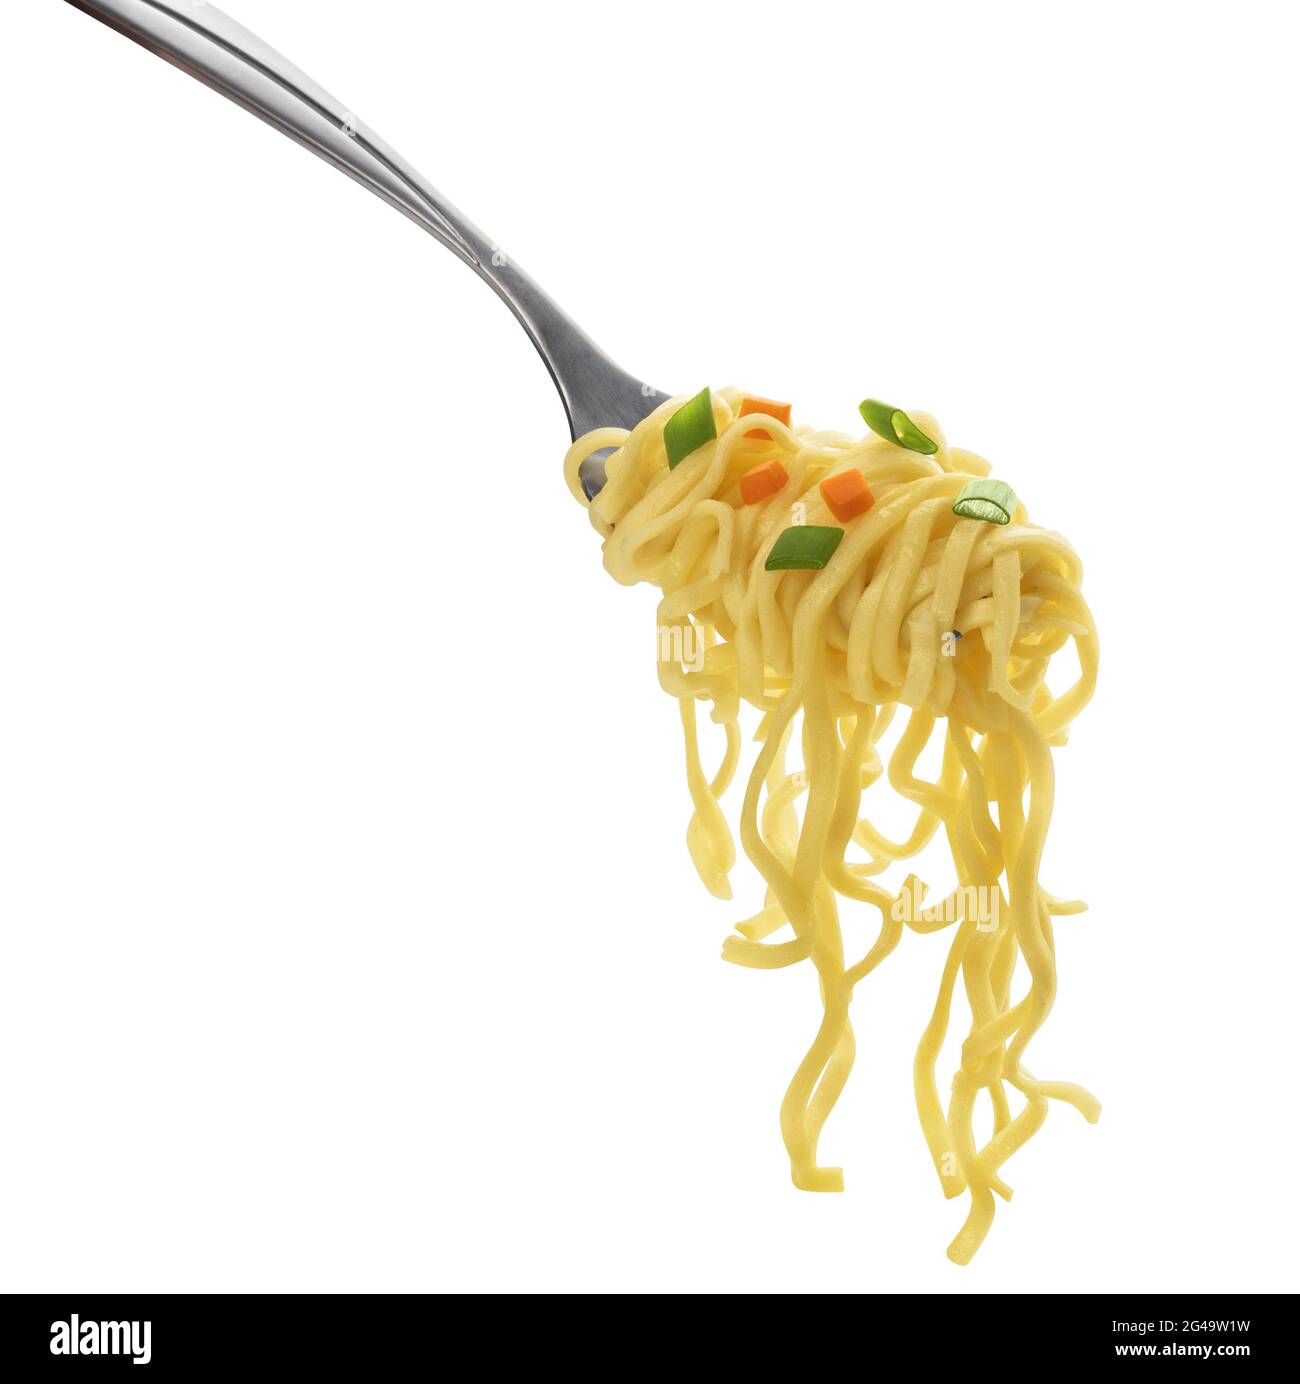 Noodles istantanei con forchetta isolata su sfondo bianco Foto